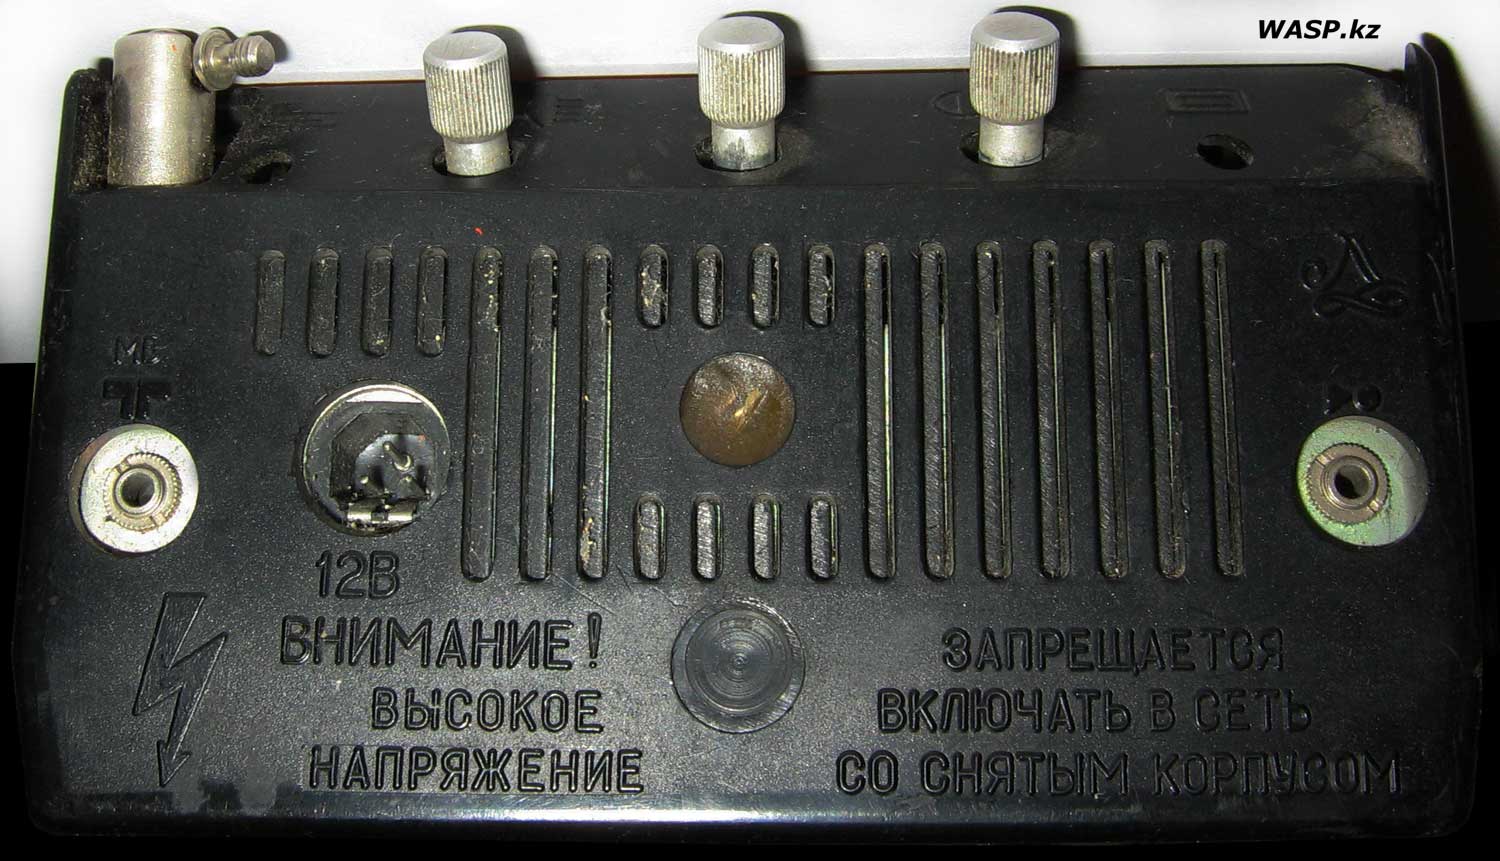 Телеконструктор, обзор советского телевизора